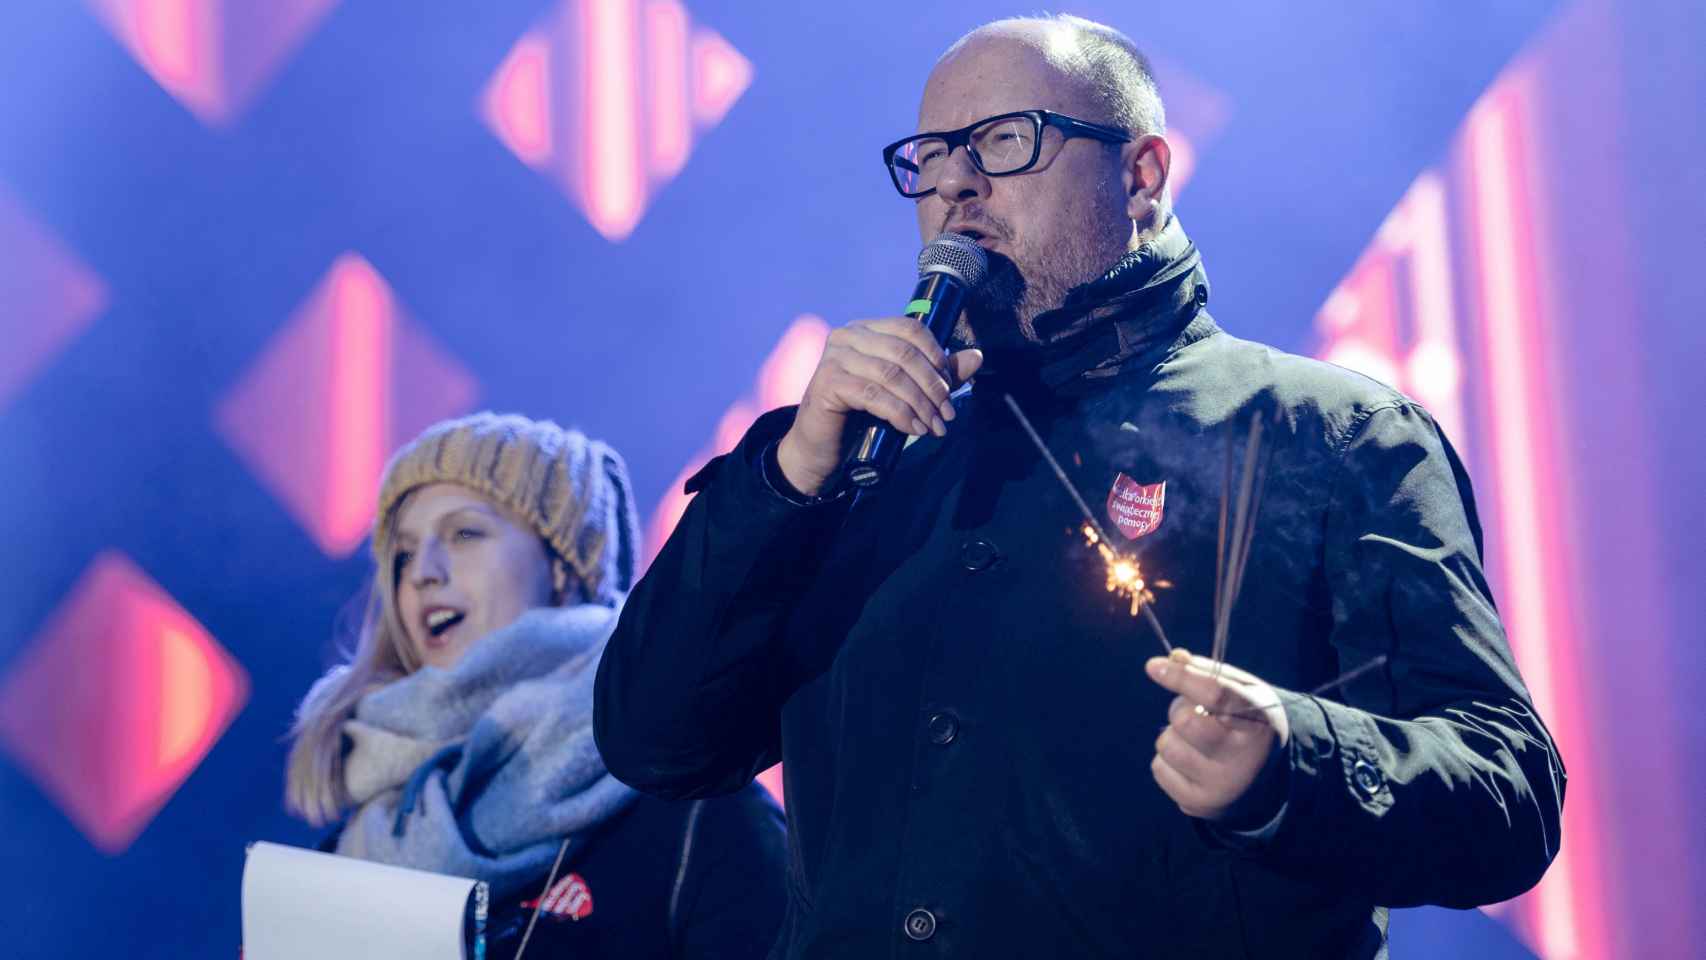 Paweł Adamowicz en el acto benéfico en el que fue asesinado.